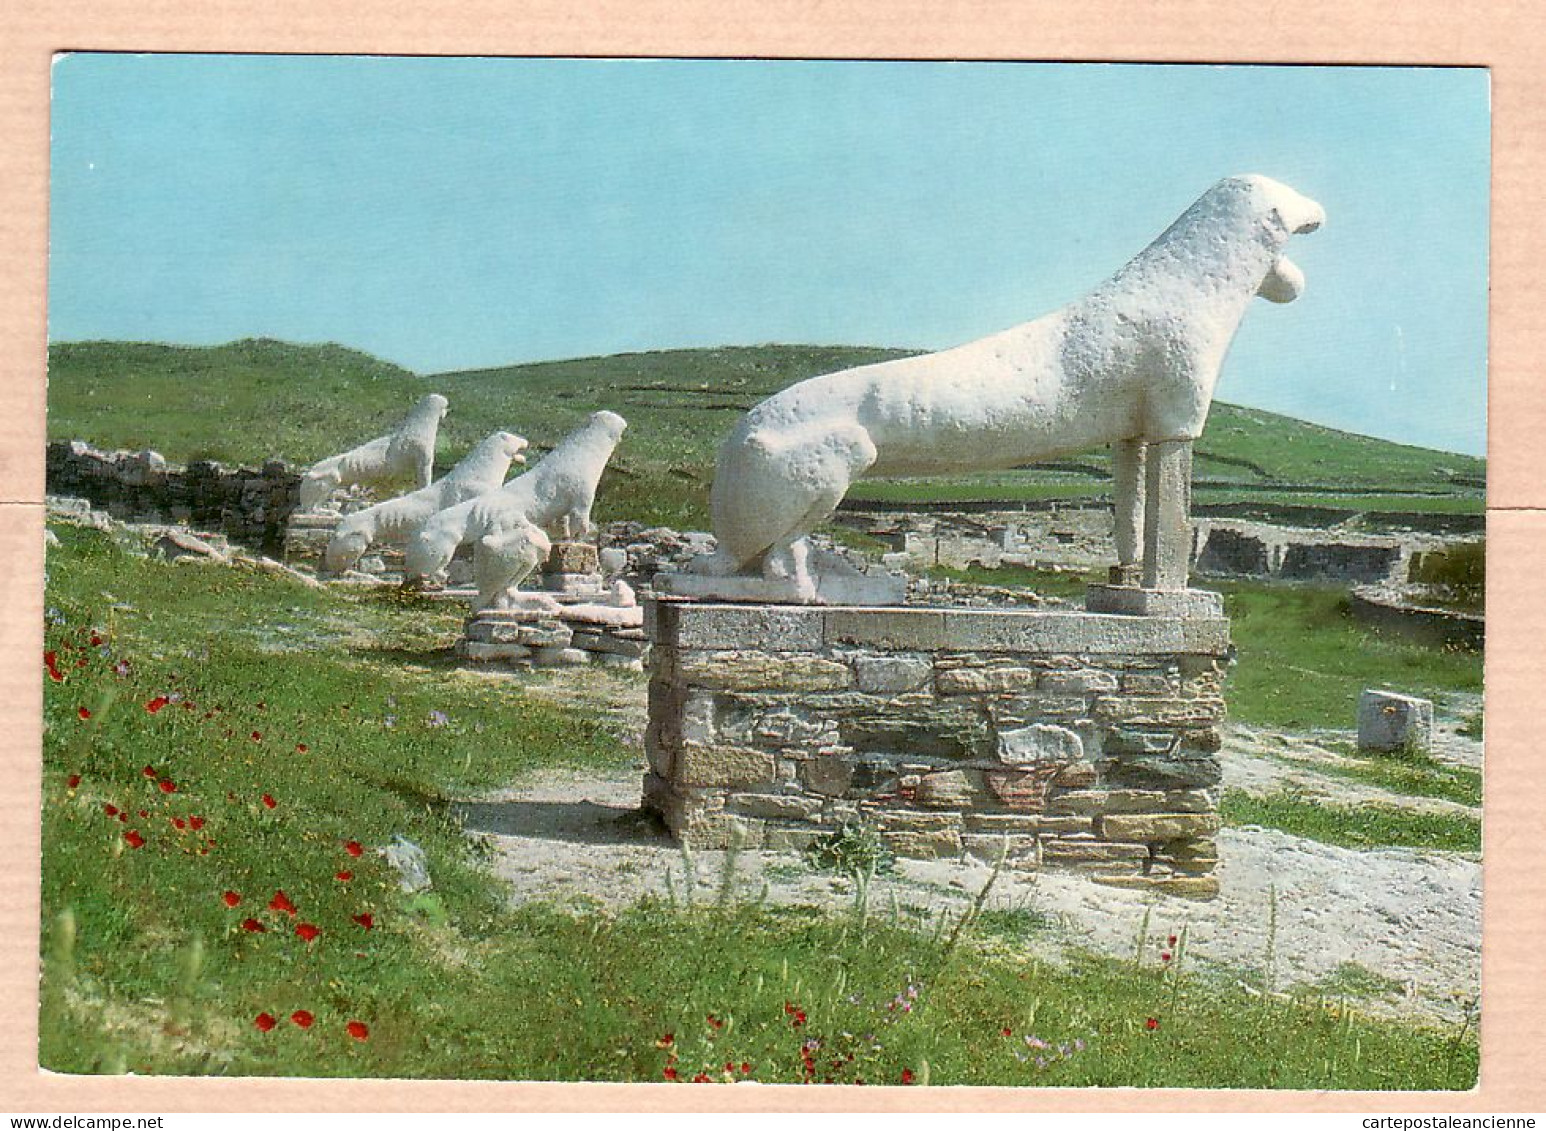 06361 / DELOS Les Statues De Lions Field Lowenstandbilder 1970s - EK N°182 Grèce Griechenland Greece - Greece